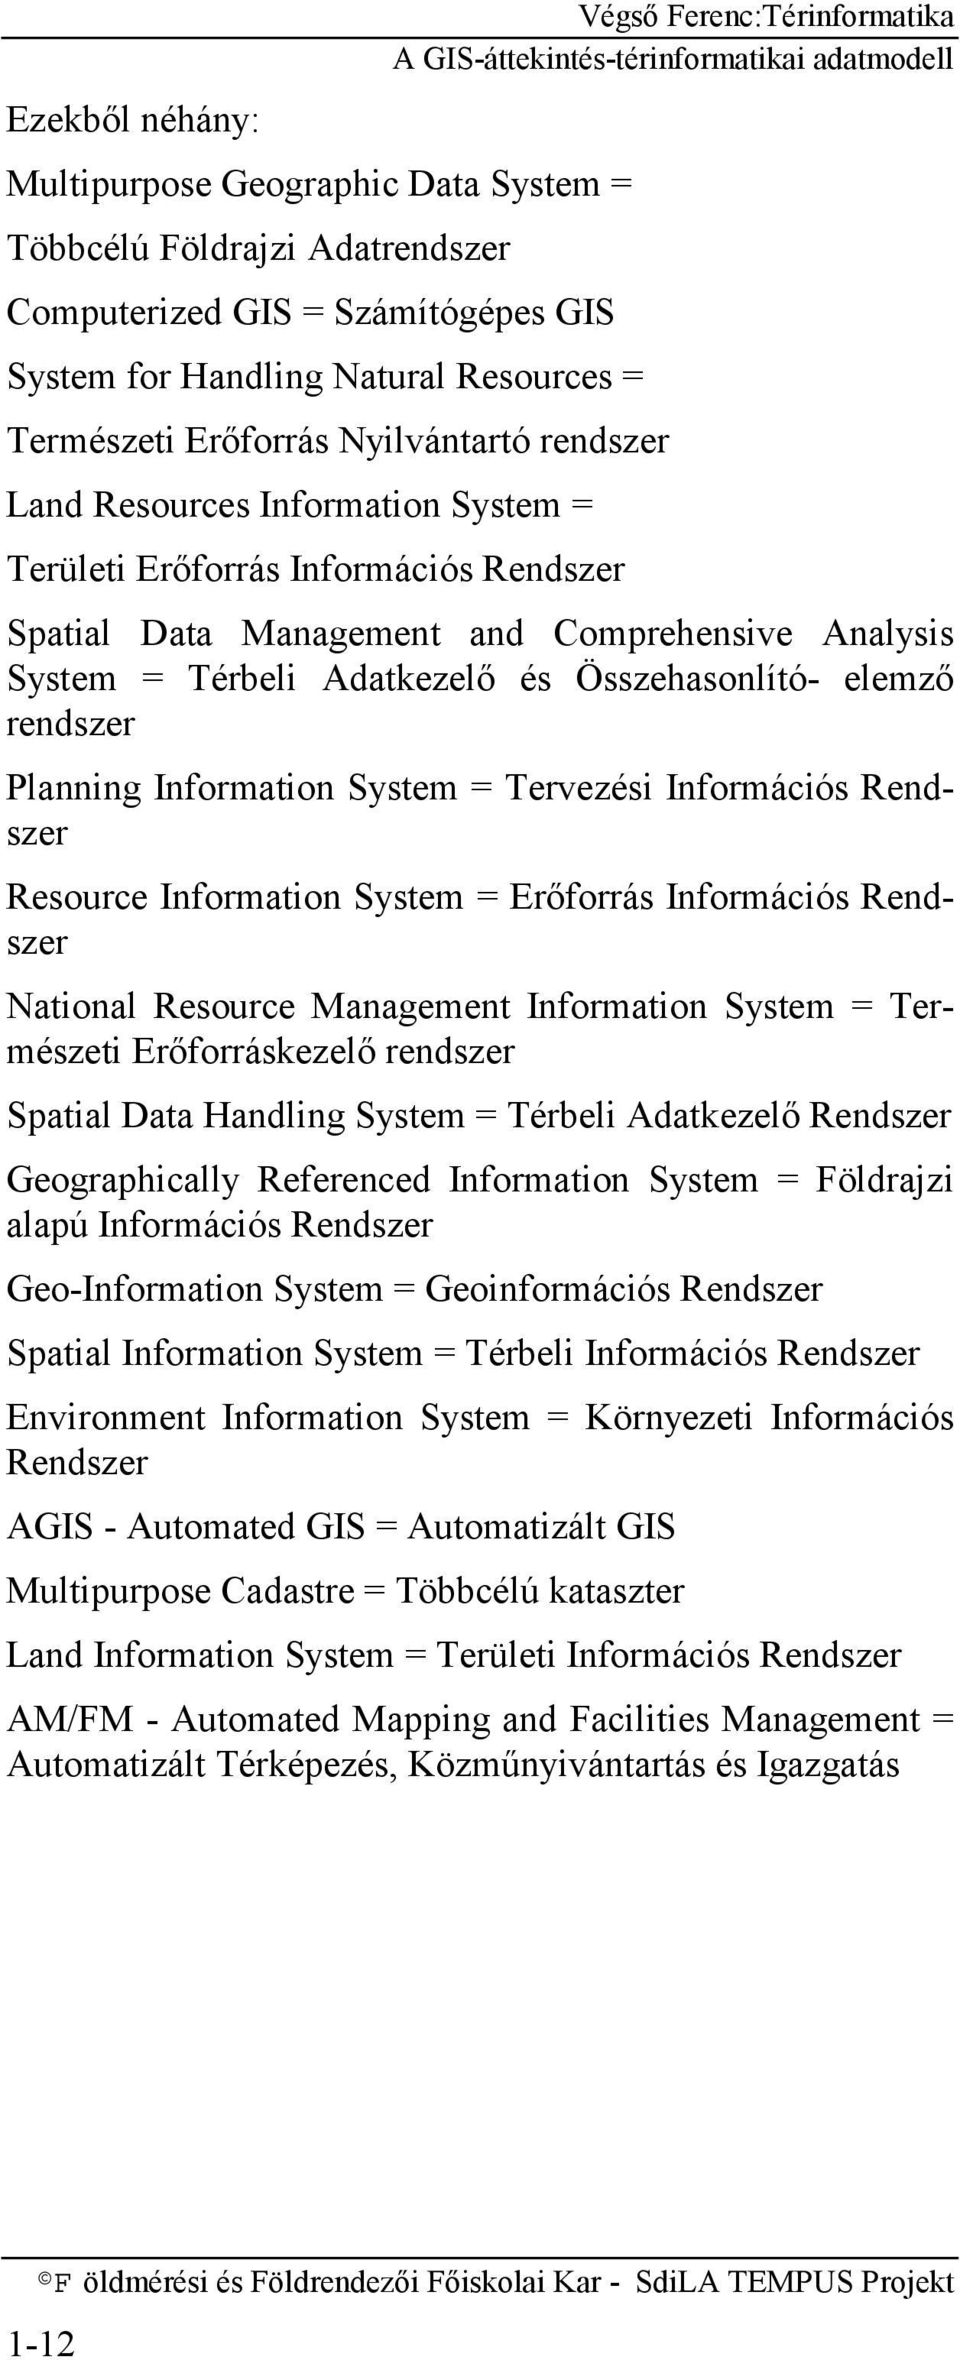 Planning Information System = Tervezési Információs Rendszer Resource Information System = Erőforrás Információs Rendszer National Resource Management Information System = Természeti Erőforráskezelő